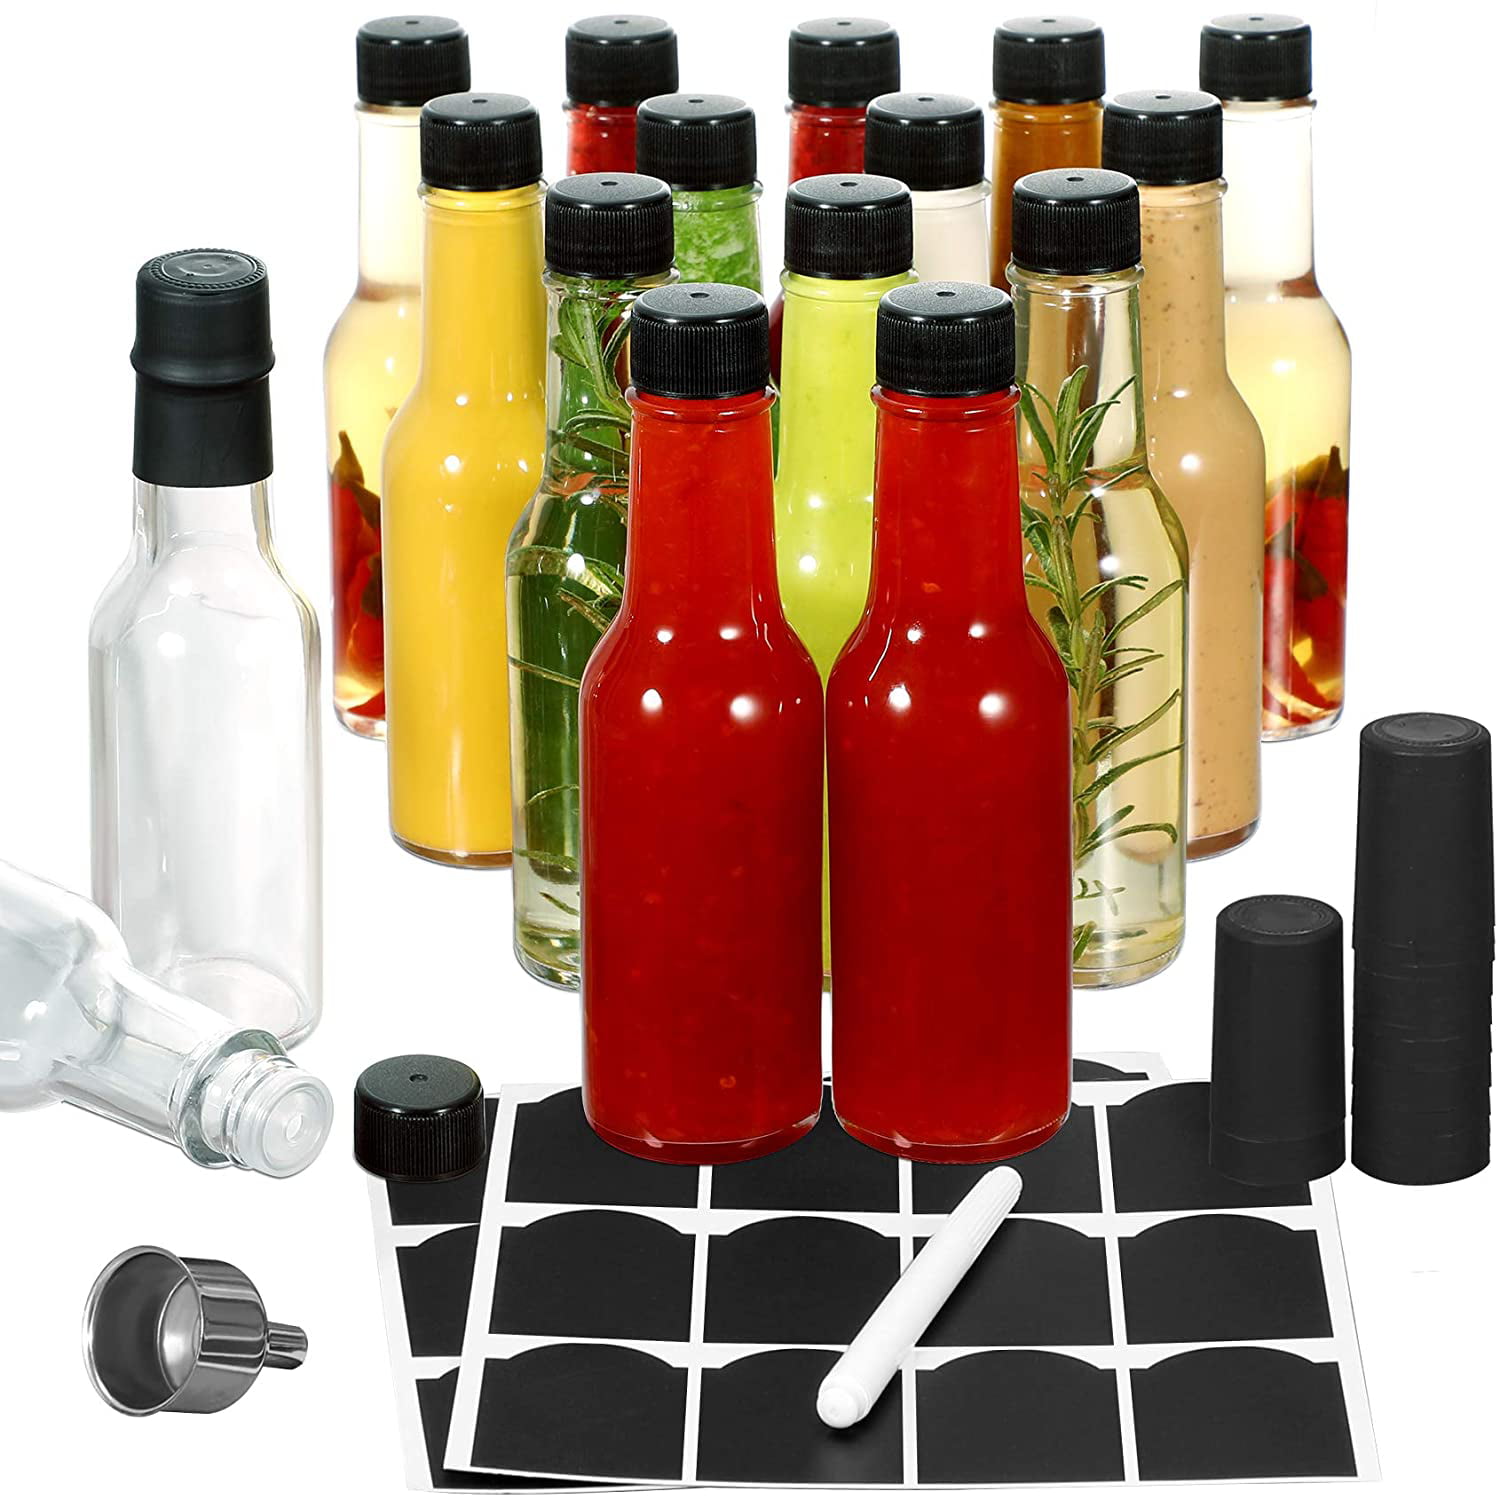  nicebottles Hot Sauce Bottles, 5 Oz - 24 Pack: Home & Kitchen